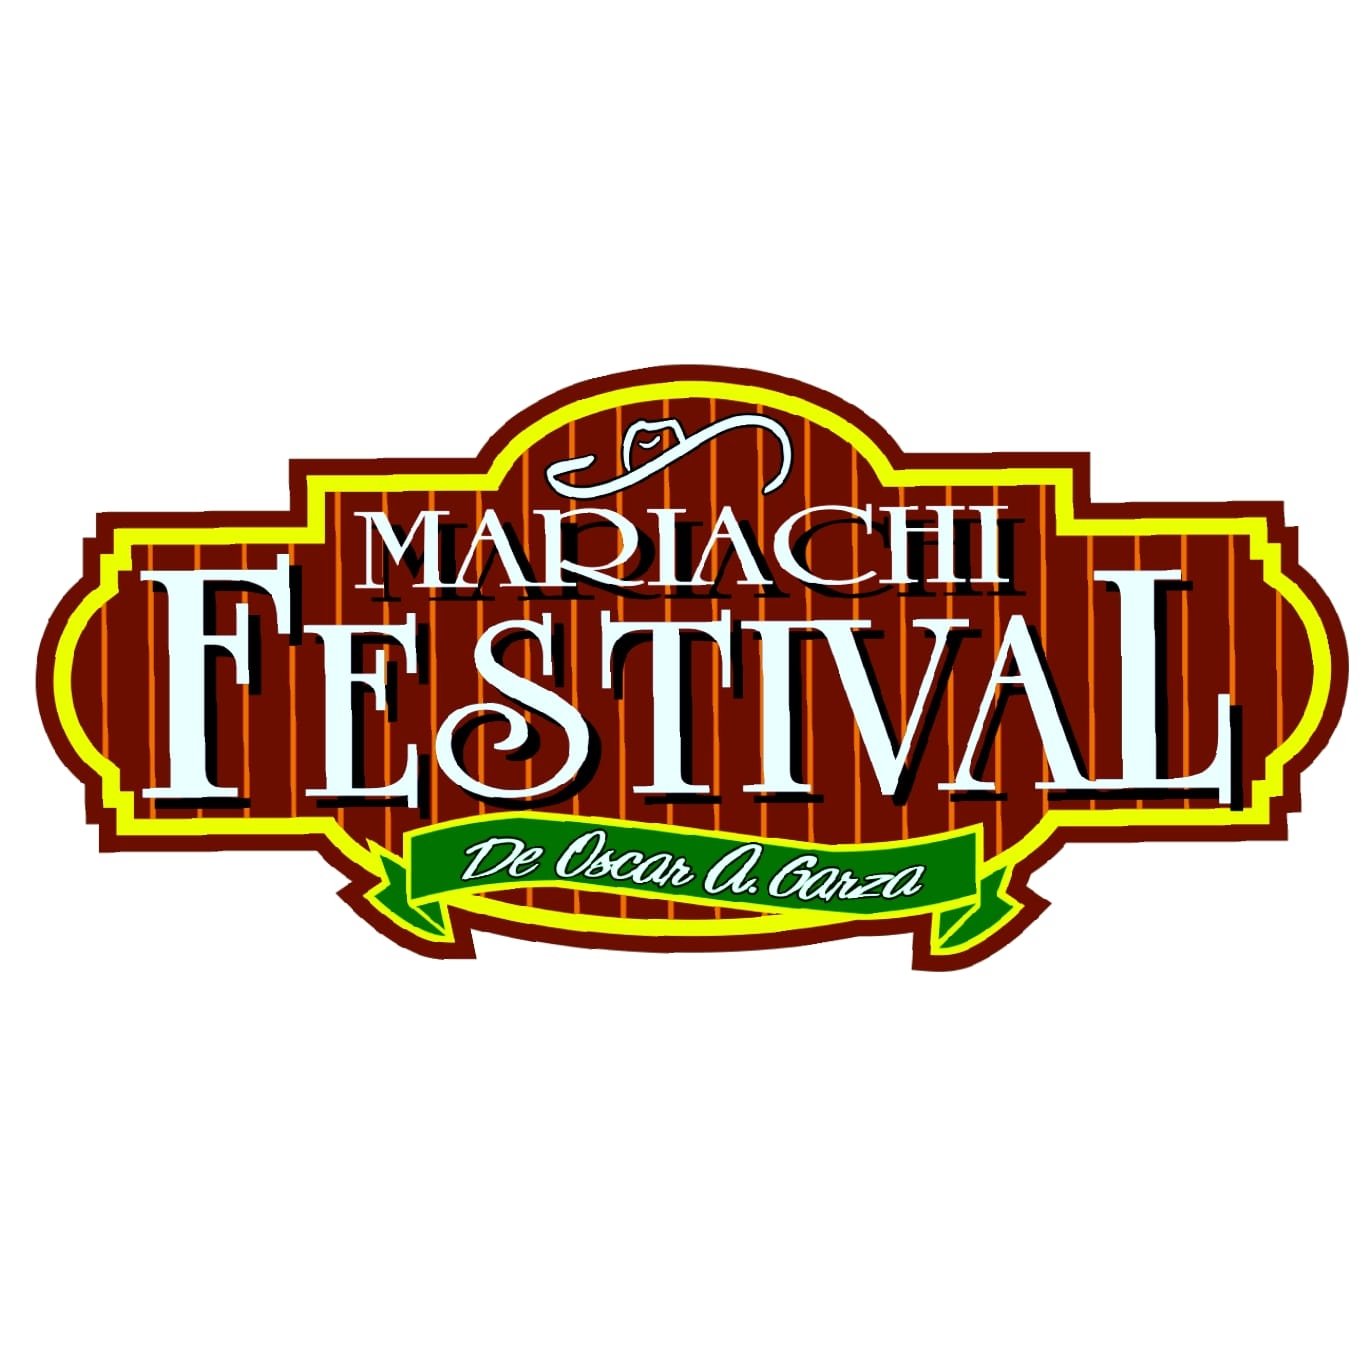 Mariachi Festival De San Antonio superola